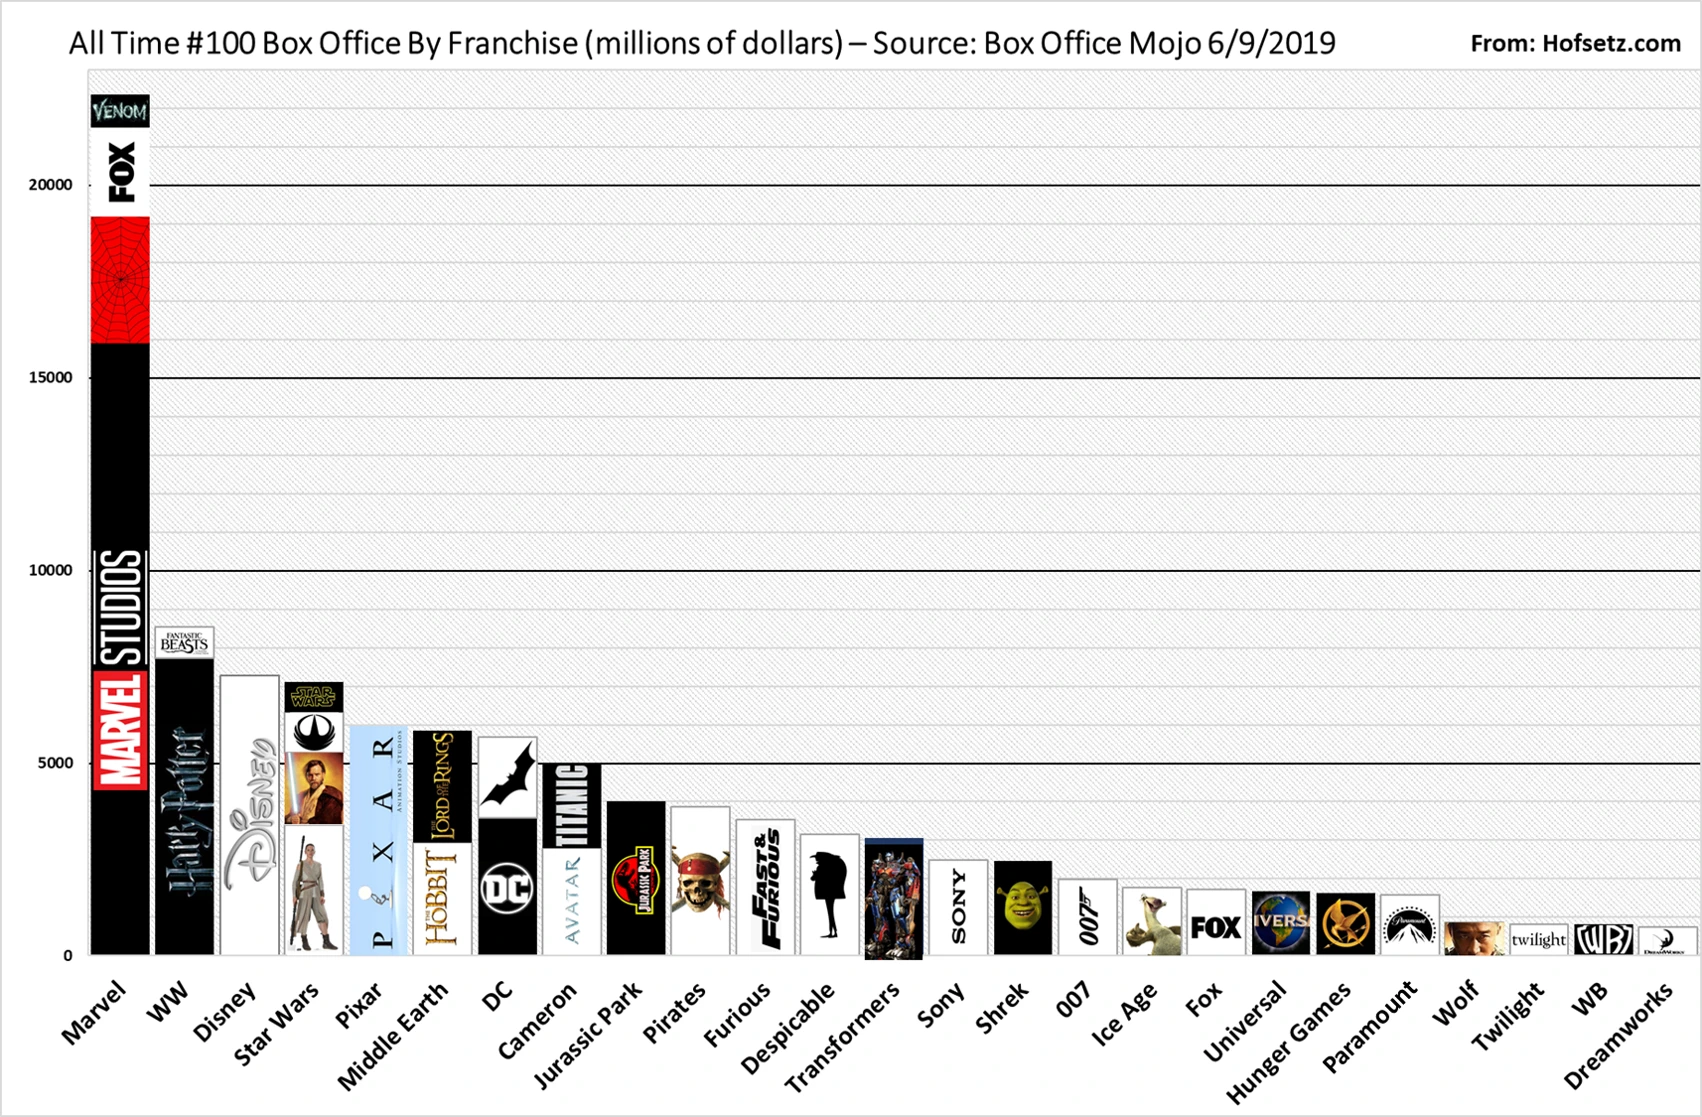 MCU: gráfico completo mostra evolução (e queda) de bilheteria dos filmes